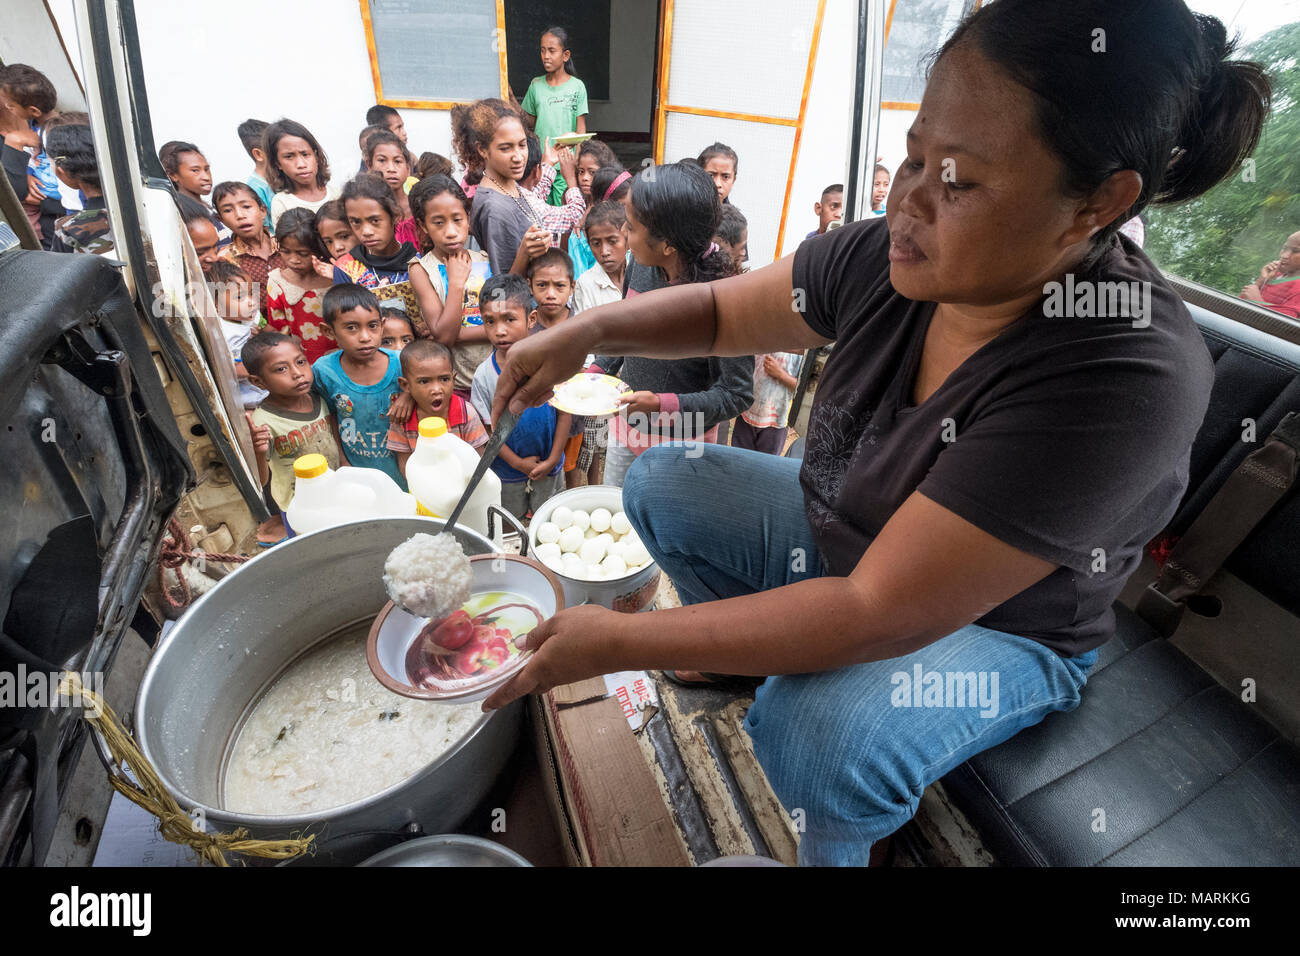 Christina Haryunika, Koordinator eines Jesuiten Ernährungsprogramm, verteilt Nahrungsmittel für unterernährte Kinder in Cocoa Village, Distrikt Ermera, Timor-Leste. Christina reist in den drei Dörfern fast täglich zu Handout Mahlzeiten. Viele Dorfbewohner in den ländlichen Gebieten haben große Familien, die sie nicht unterstützt, so dass eine grosse Zahl der Kinder an Unterernährung leiden. Stockfoto